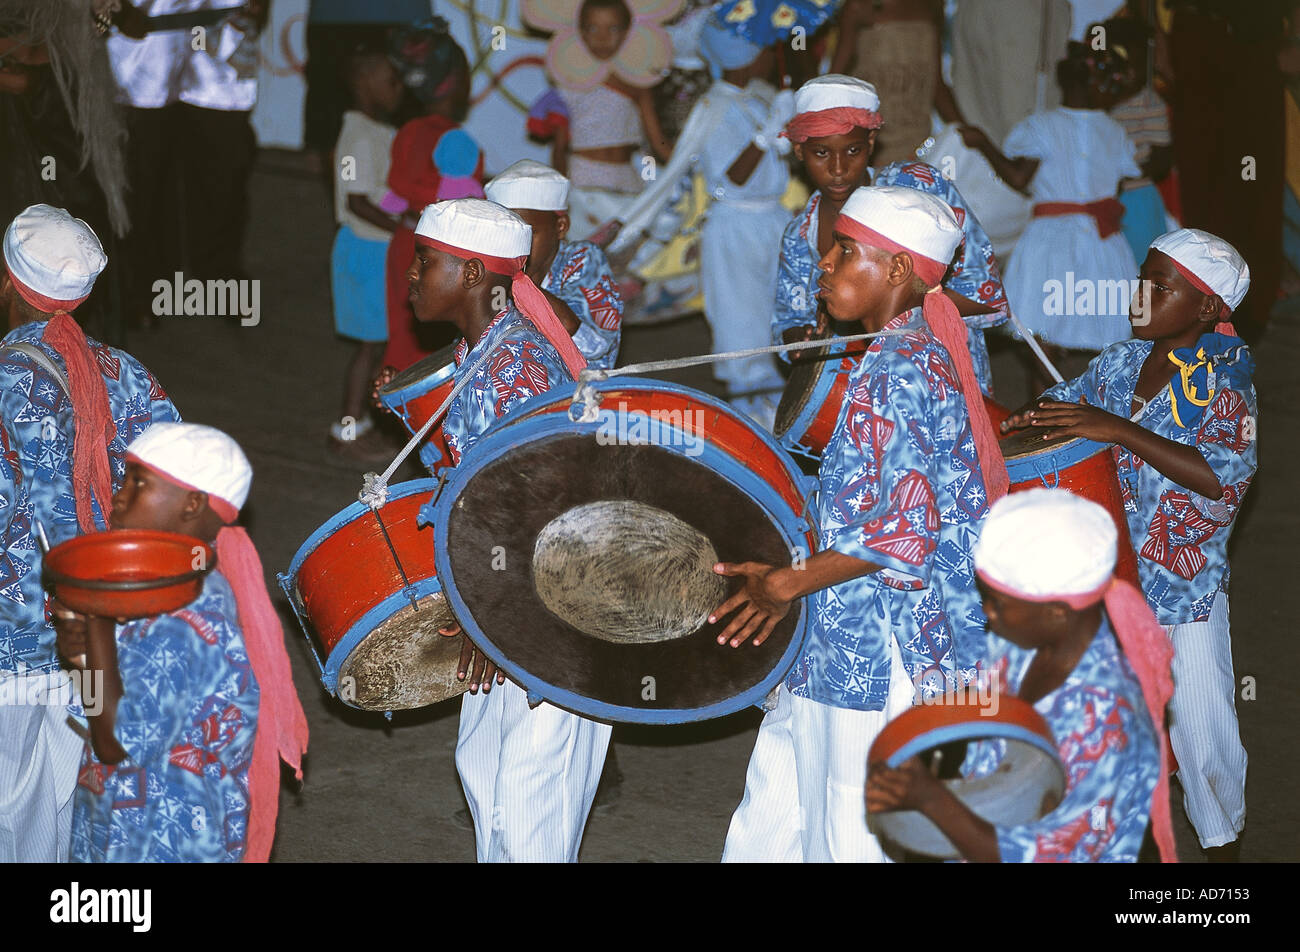 Cuba Santiago de Cuba groupe conga pendant le carnaval Banque D'Images